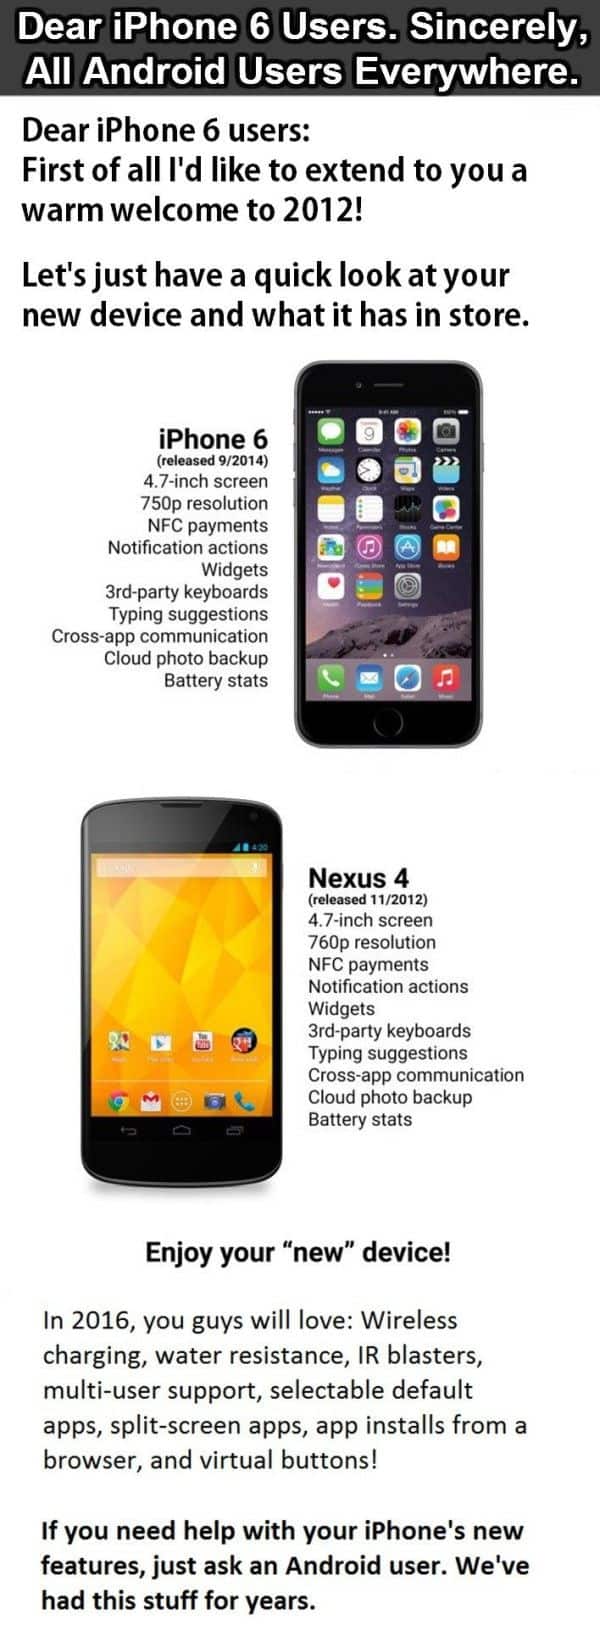 Estimados usuarios de iPhone 6: Atentamente, todos los usuarios de Android en todas partes